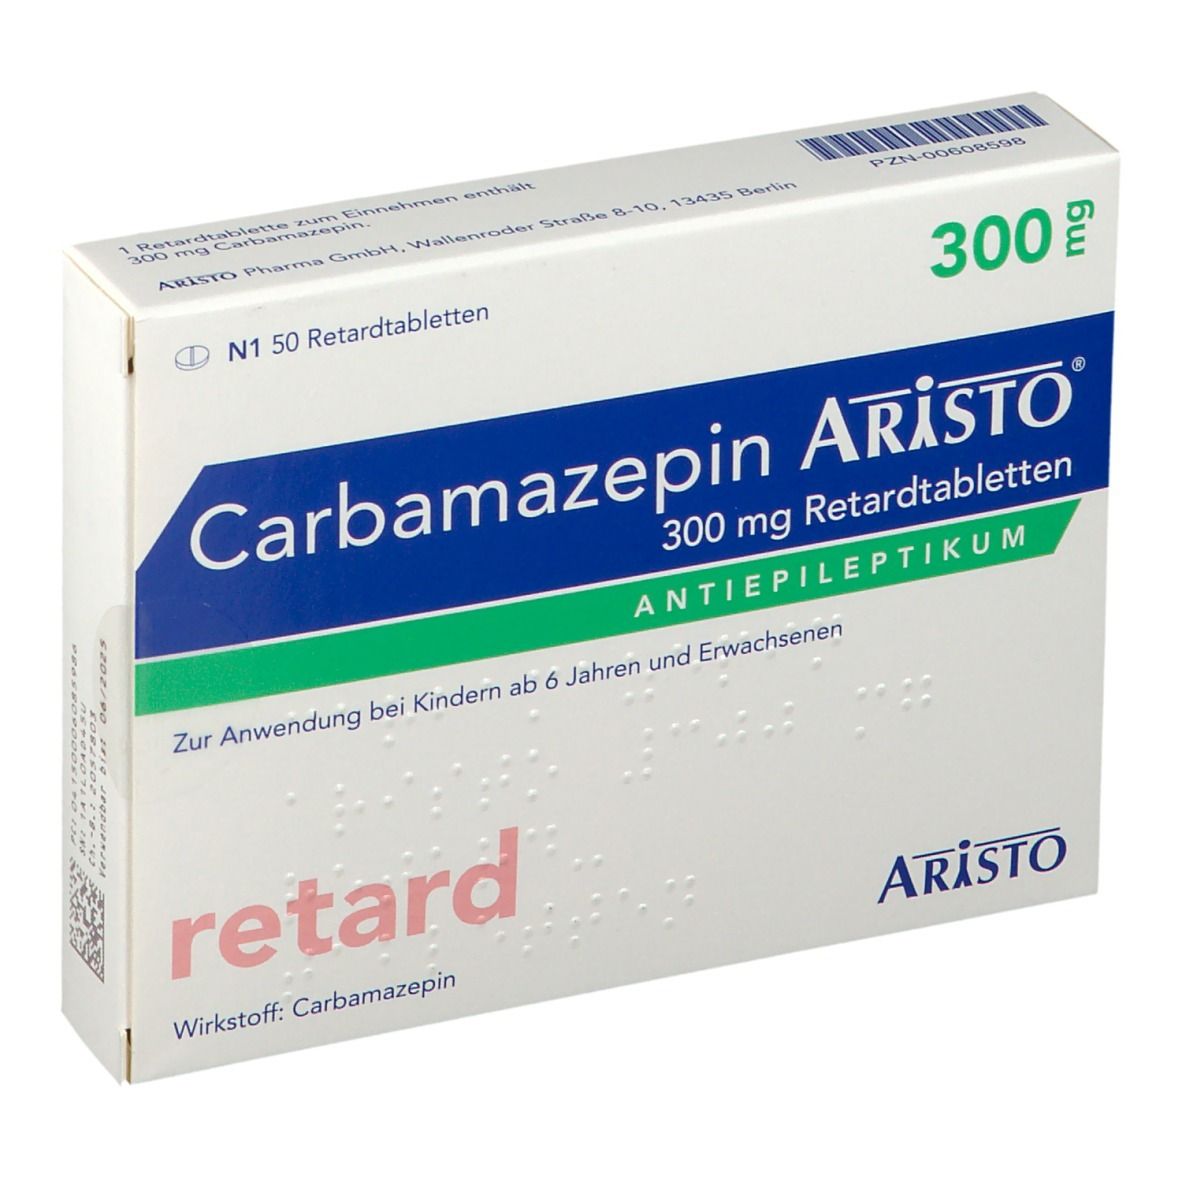 Carbamazepin Aristo® 300 mg